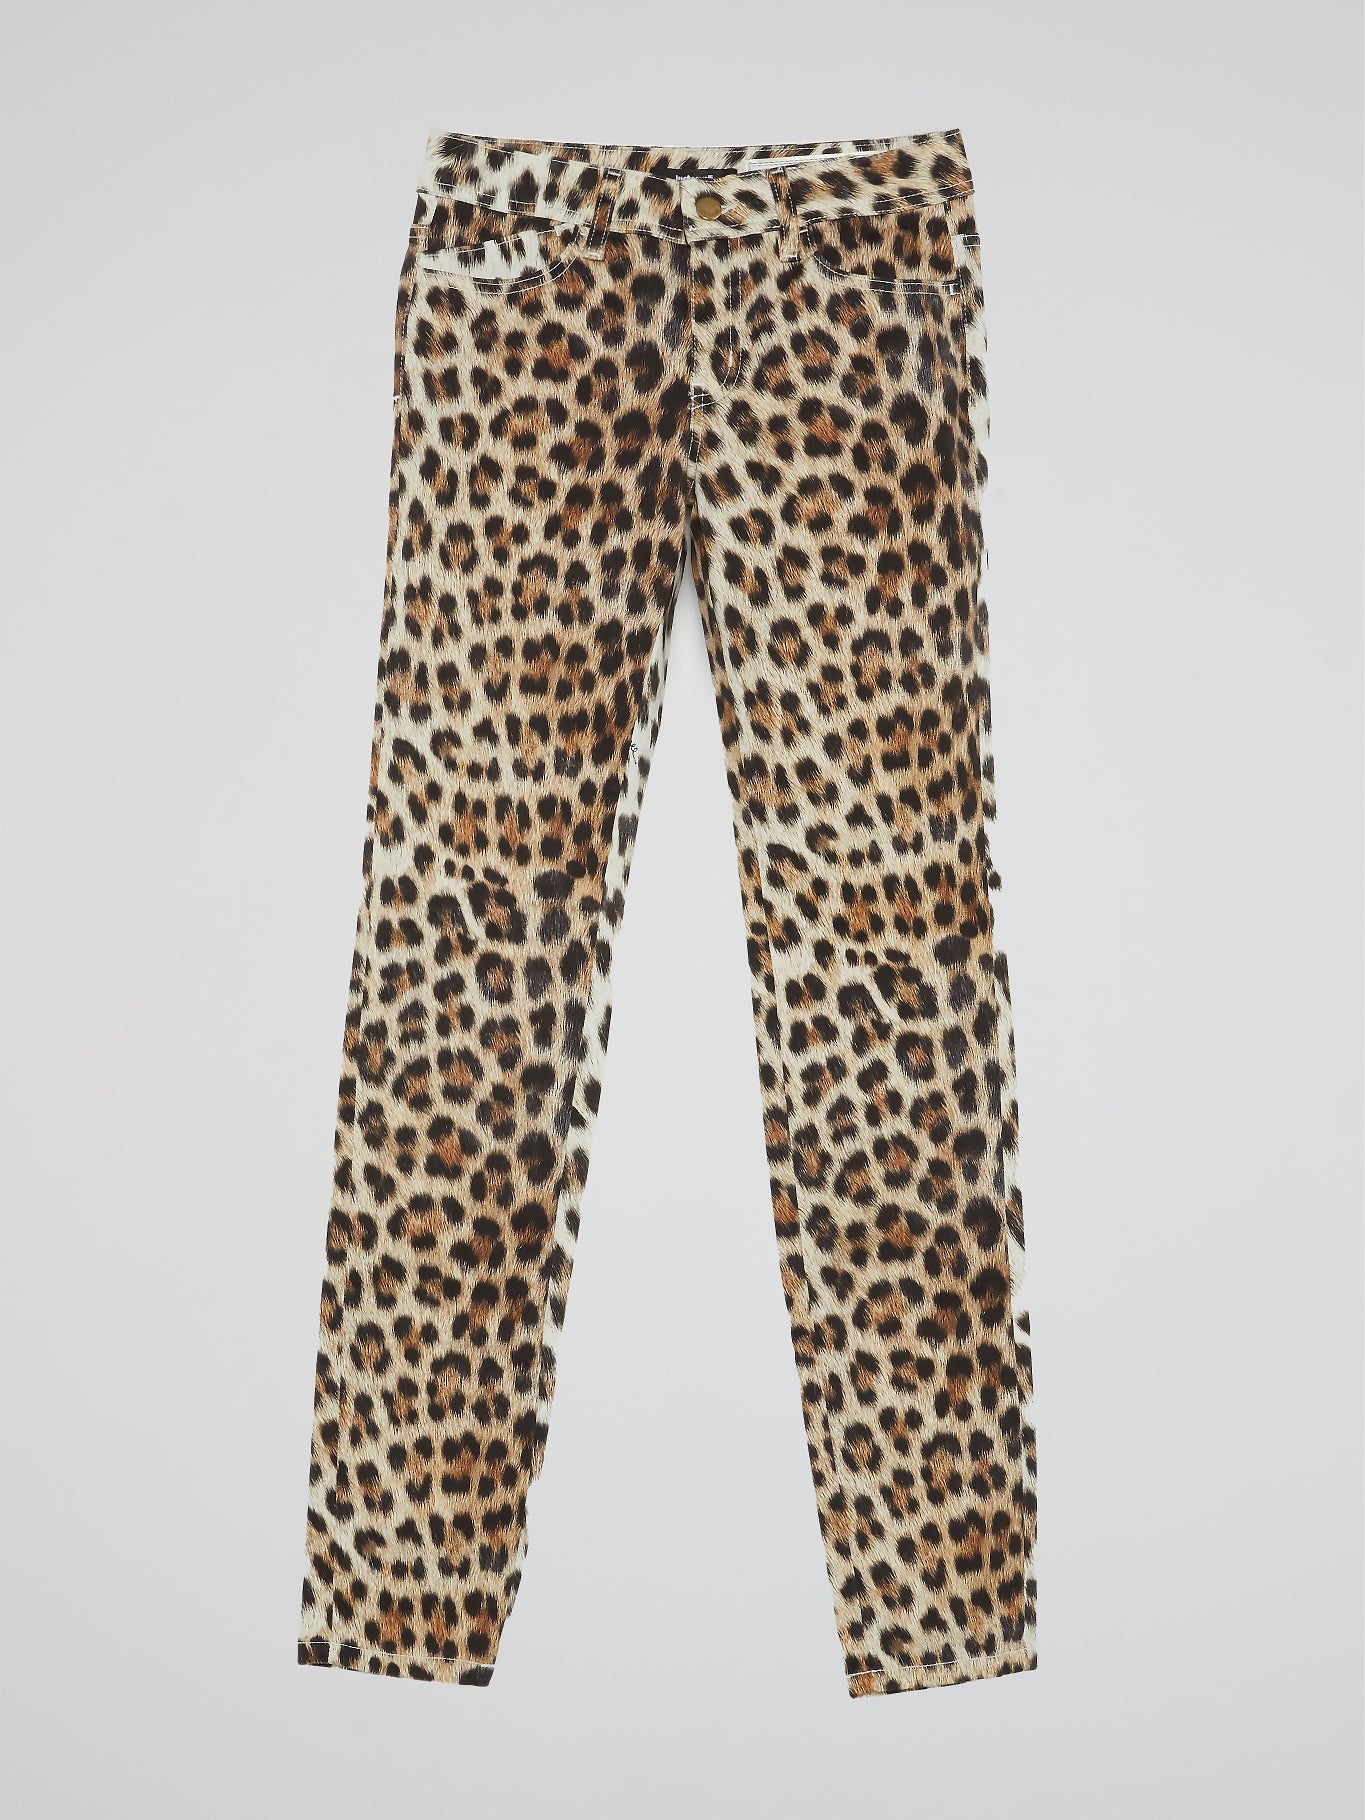 Leopard Print Straight Cut Jeans